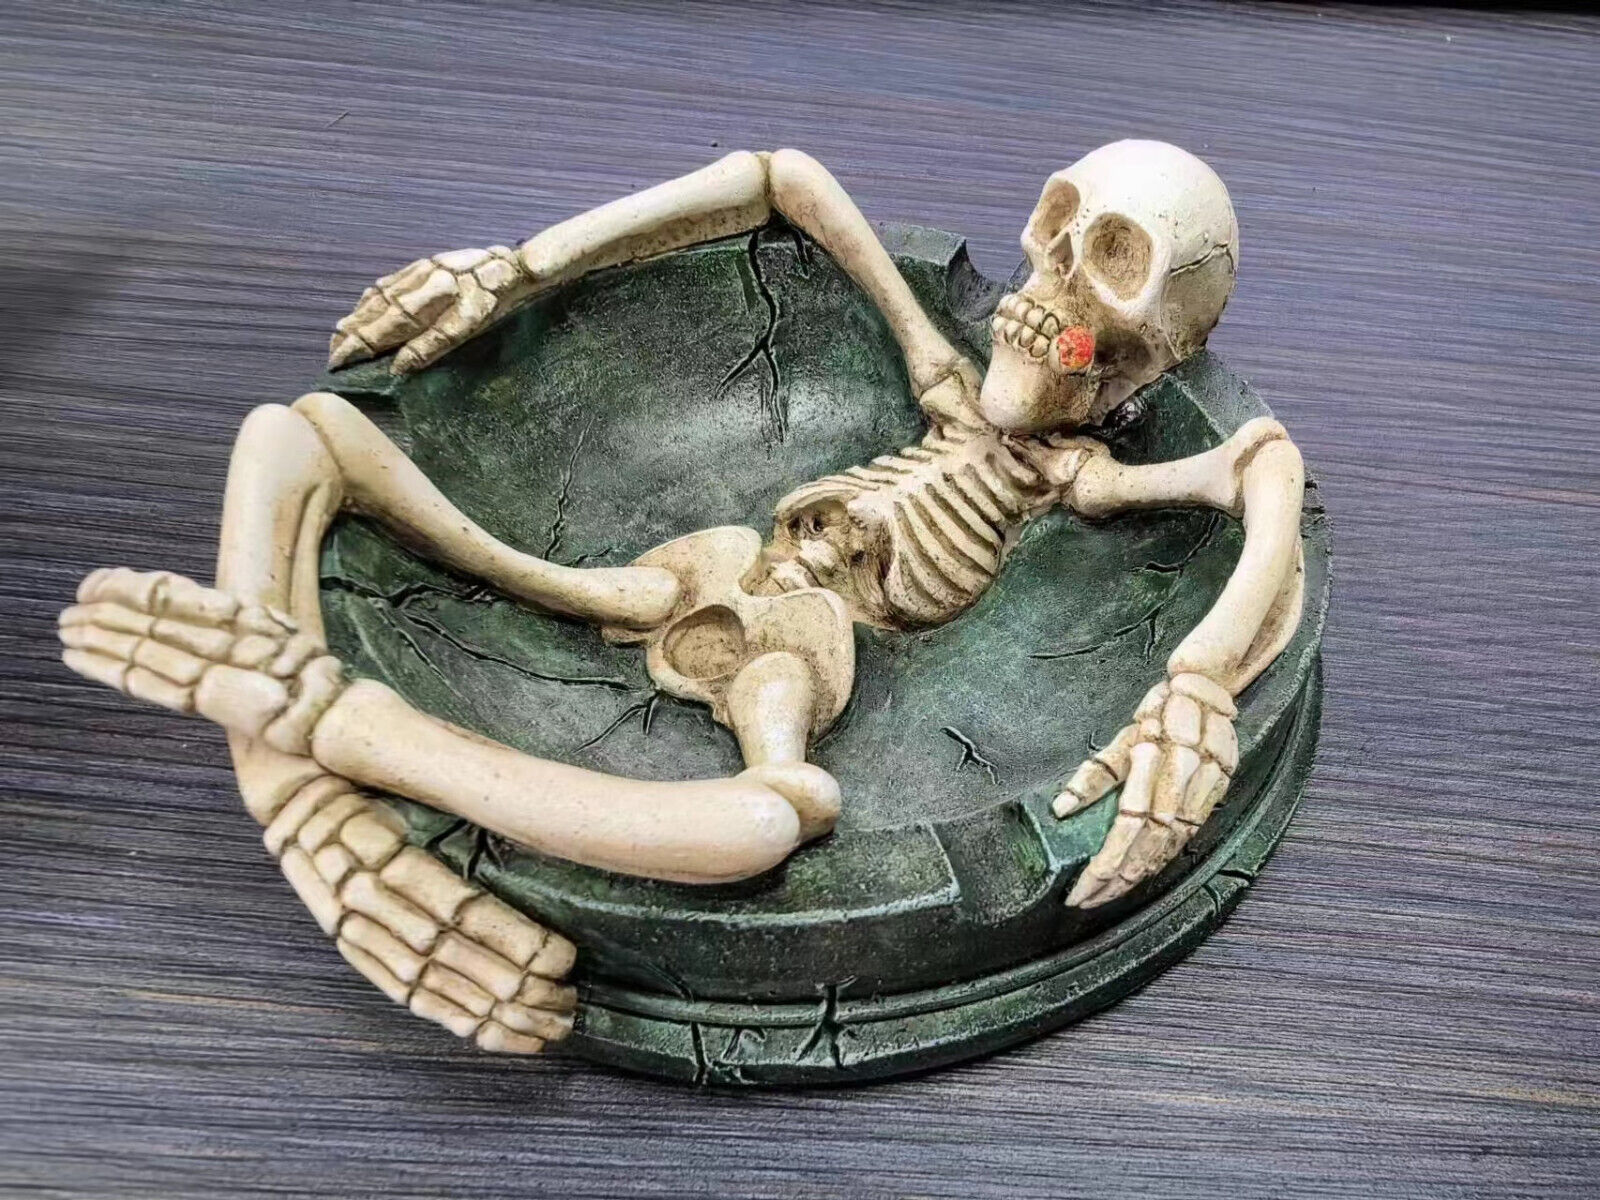 Antique Novelty Skeleton Skull Resin Ashtray Cigarette Ash Tray Home Decor Gift